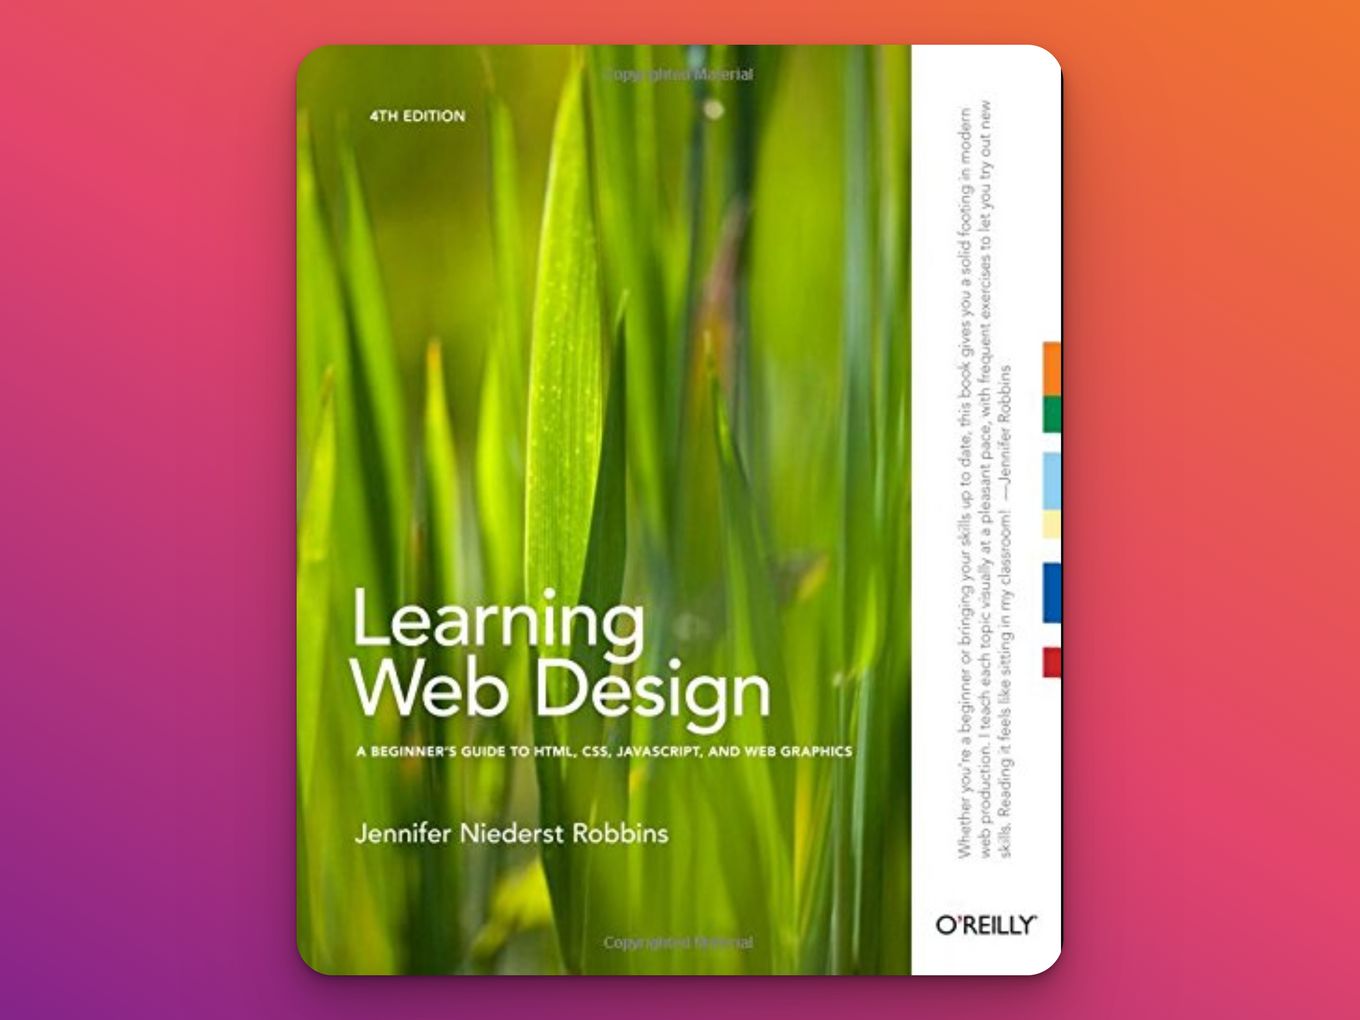 Learning Web Design by Jennifer Niederst